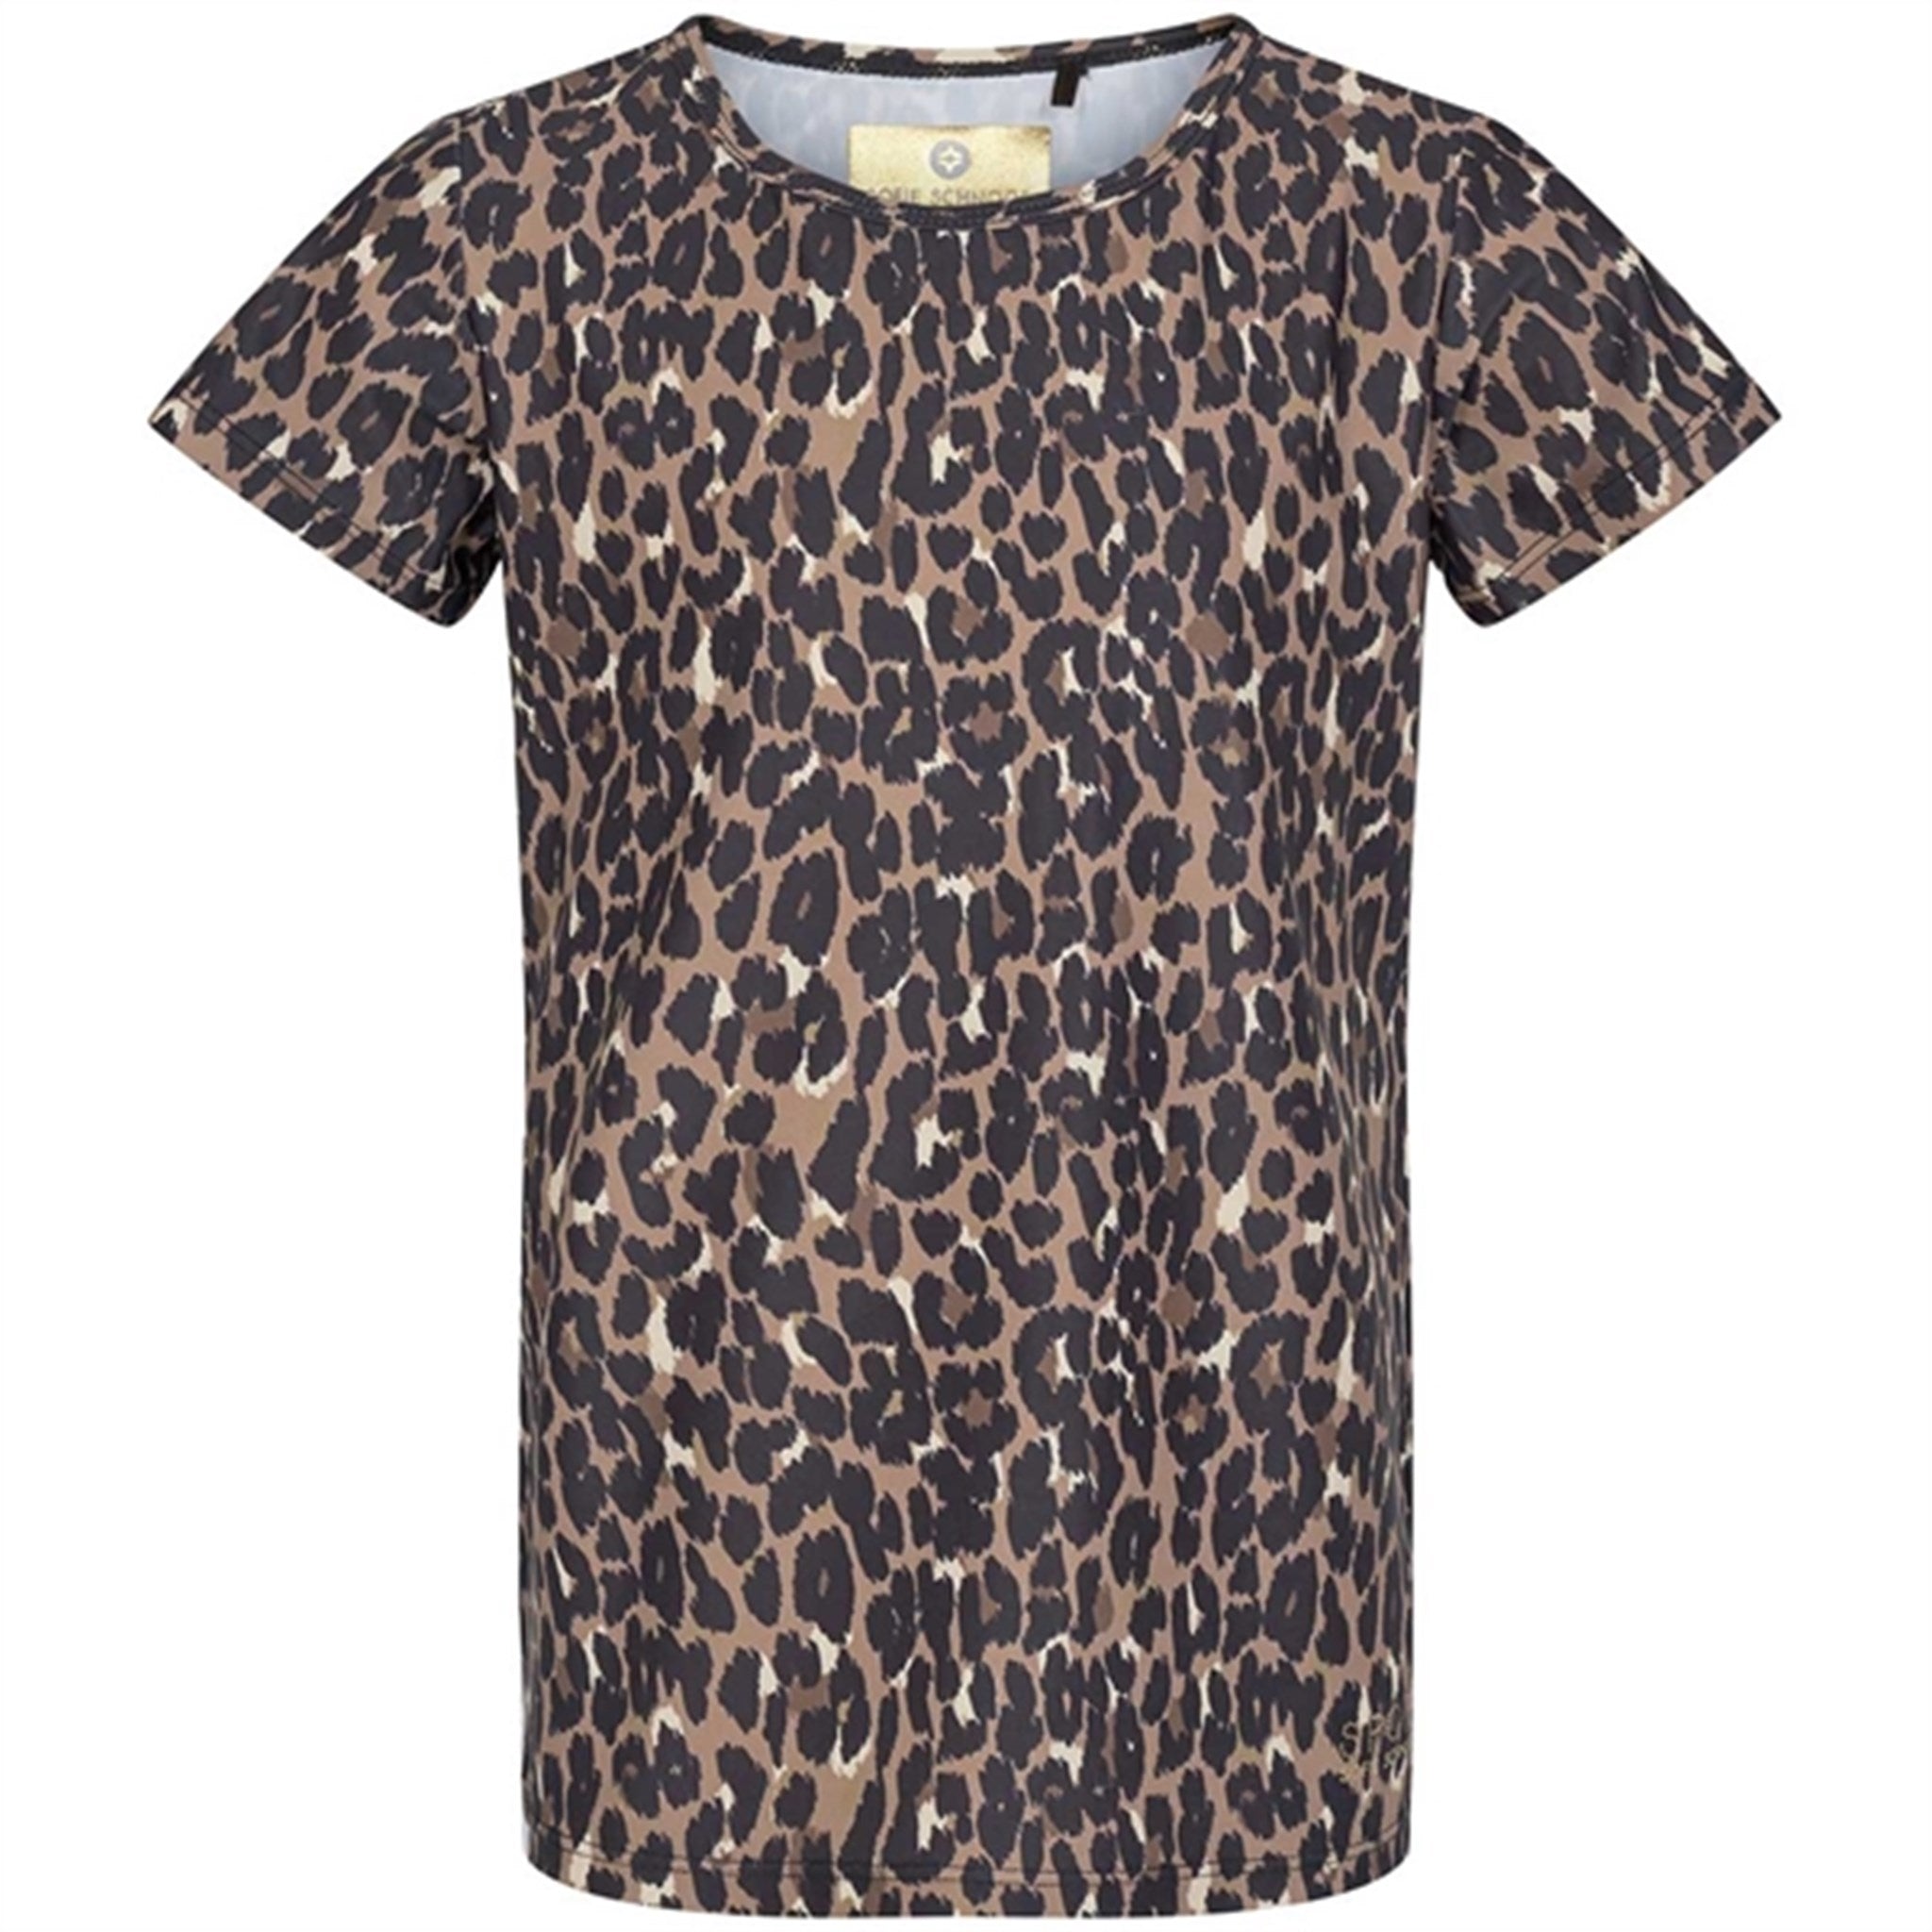 Sofie Schnoor Young Leopard Louisa T-shirt